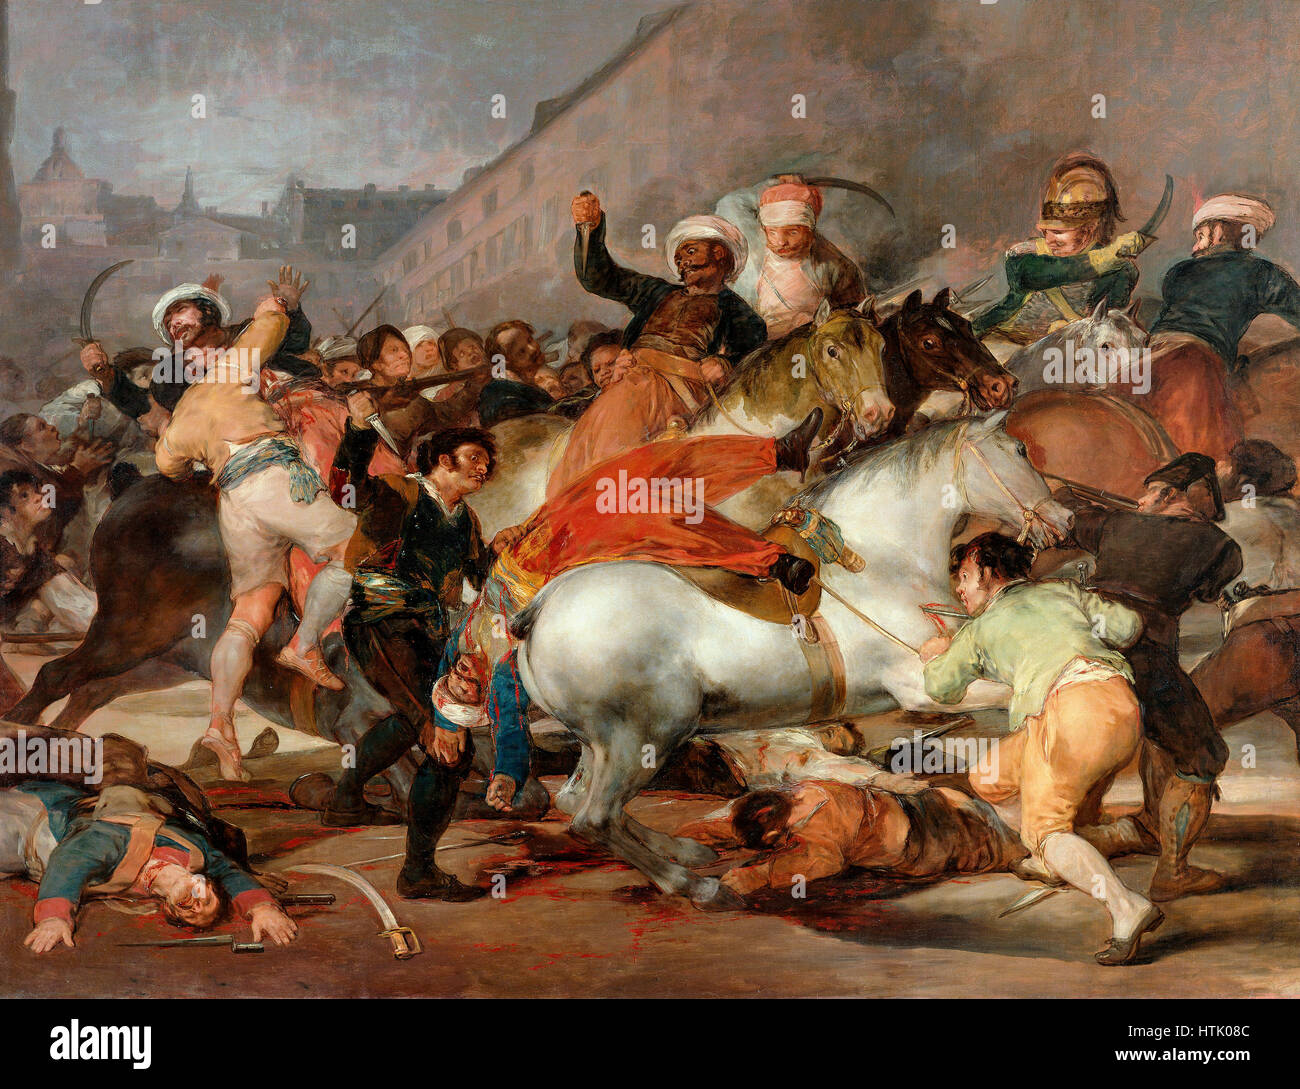 El 2 de mayo de 1808 o la carga de los mamelucos de Francisco de Goya 1814 Foto de stock